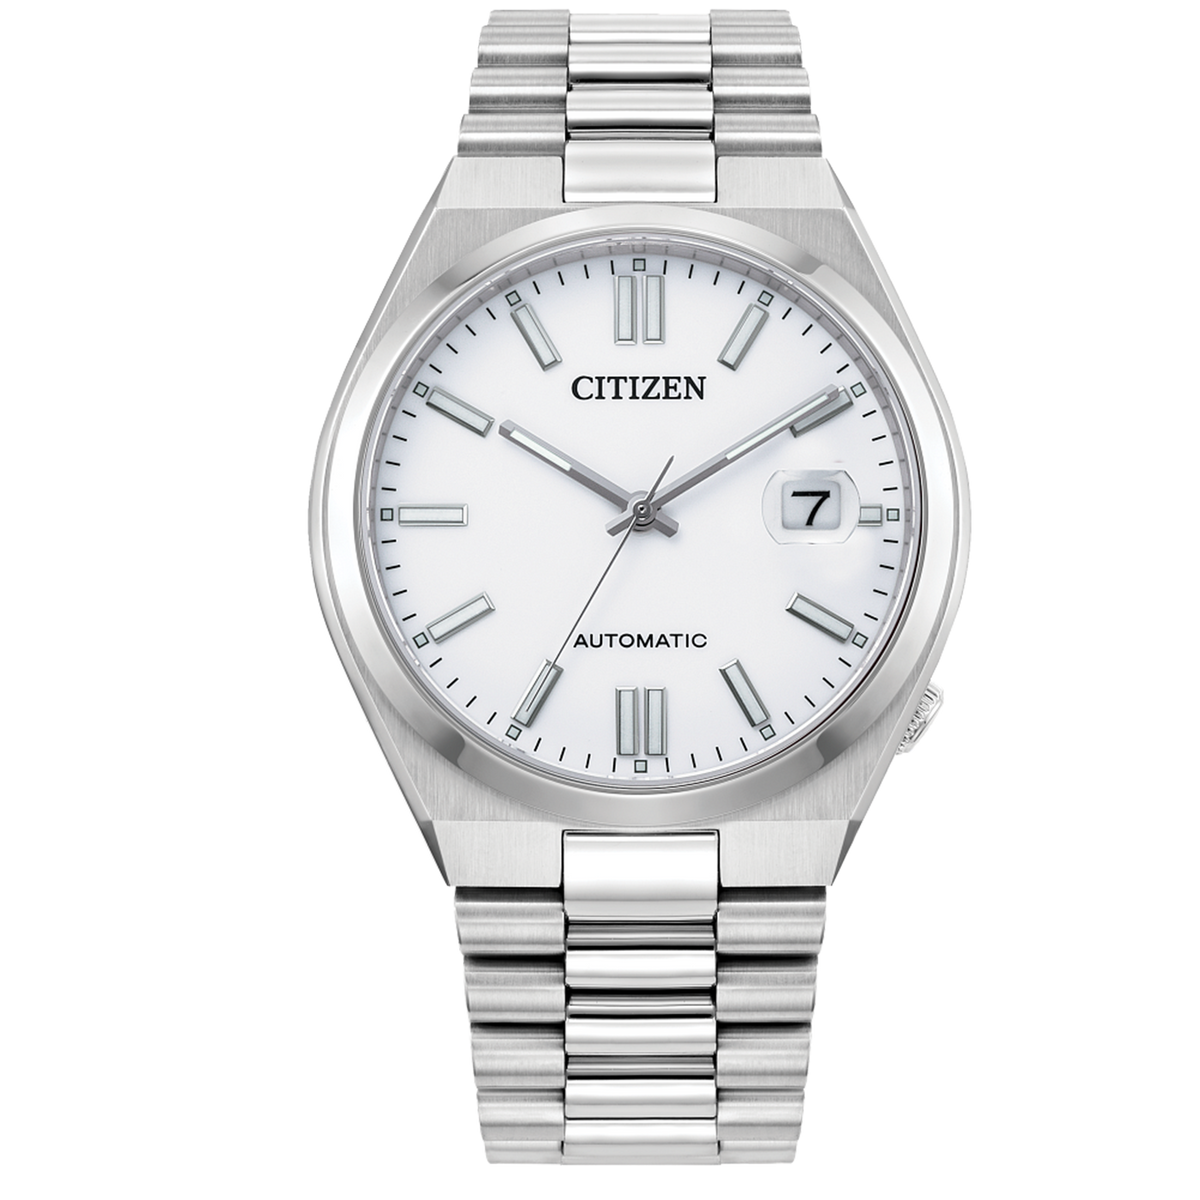 Citizen Automatic - ‘TSUYOSA’ - Brilliant White